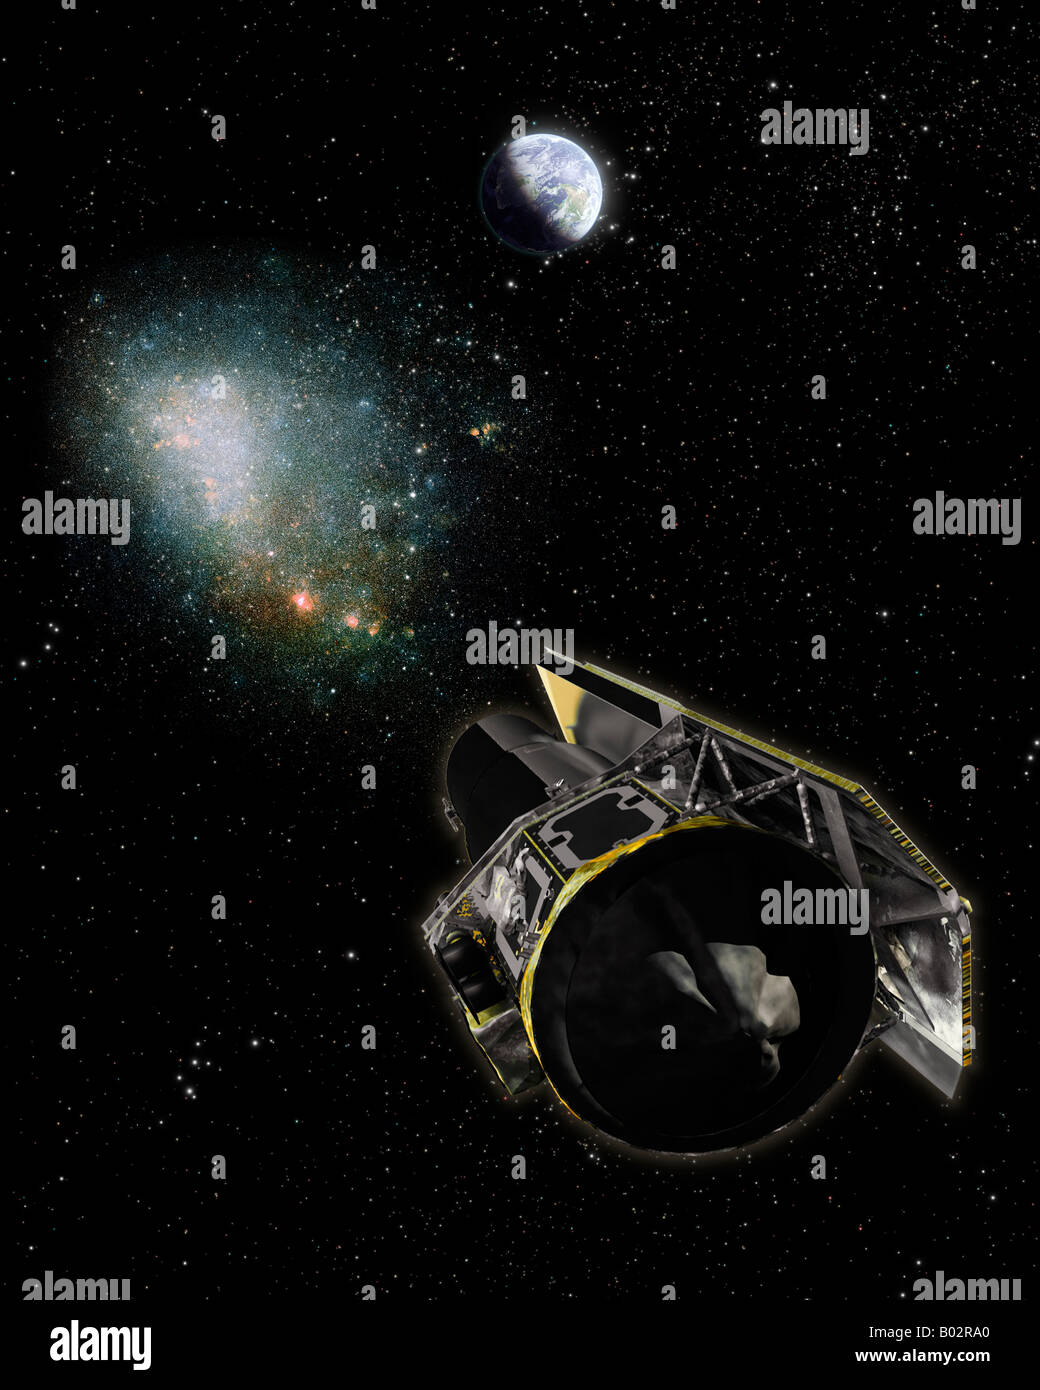 Telescopio spaziale Spitzer, un satellite galaxy e la messa a terra. Foto Stock